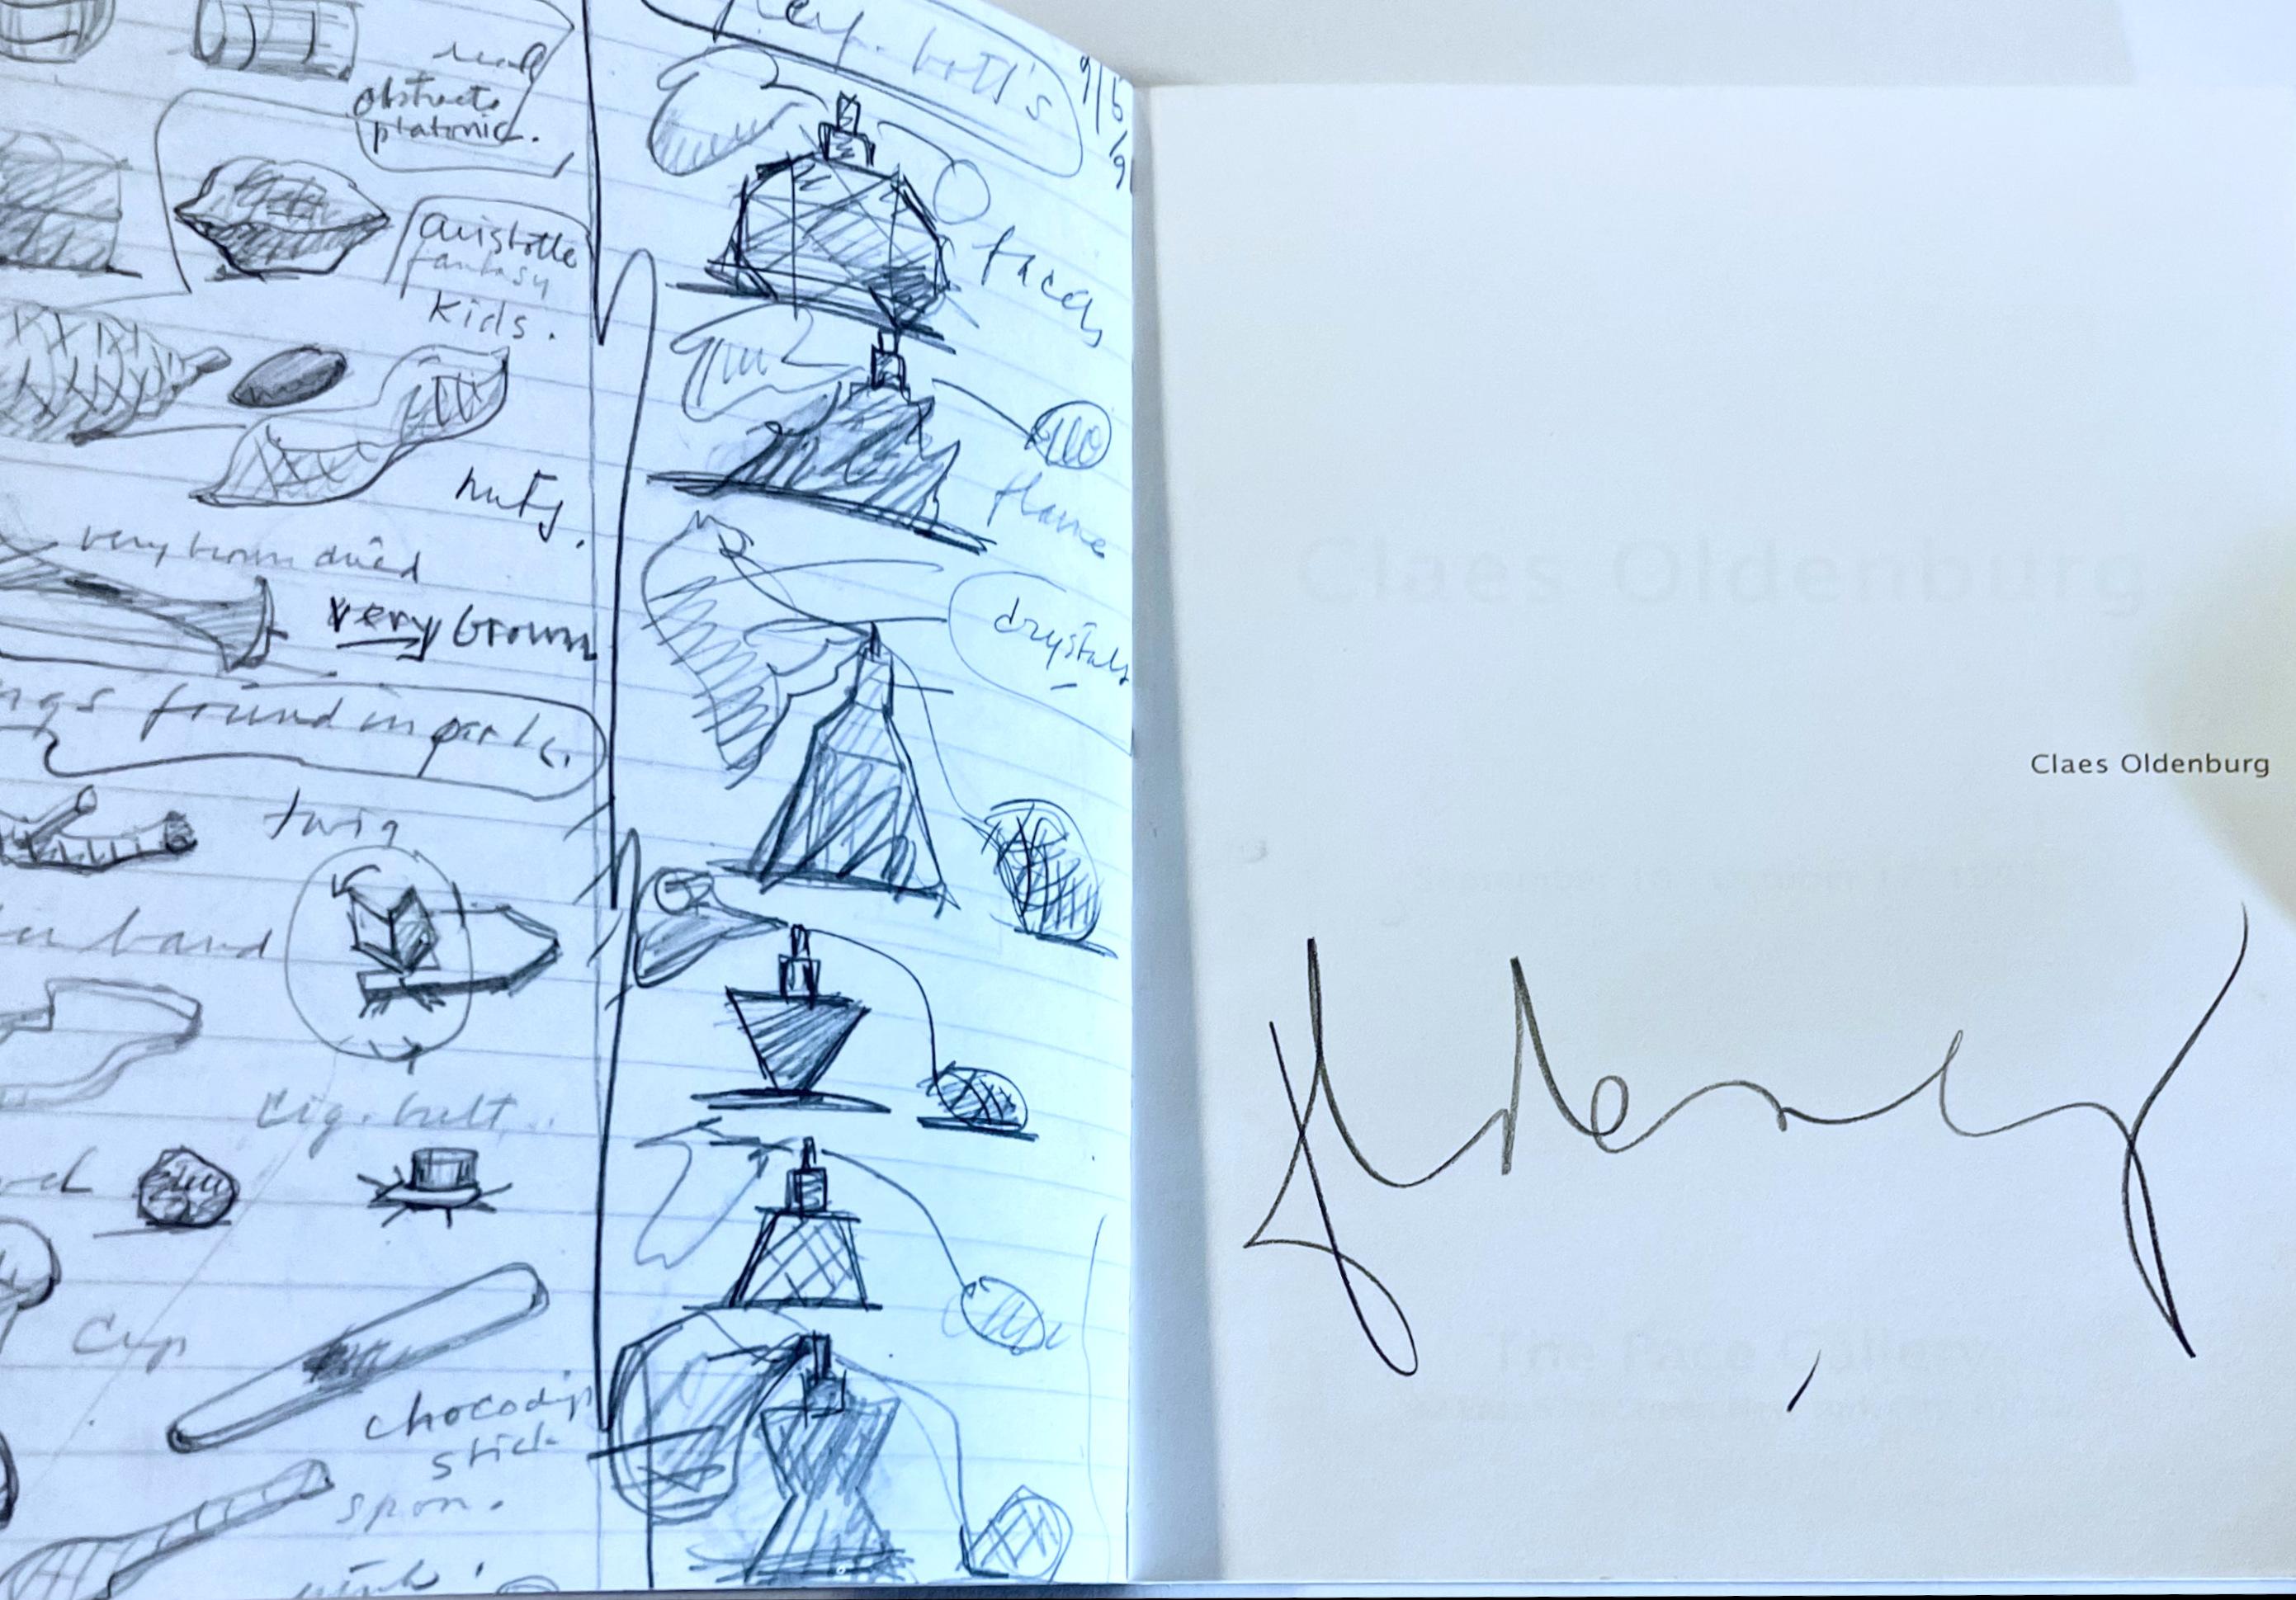 Claes Oldenburg, Claes Oldenburg (Hand signed by Claes Oldenburg), 1992 For Sale 2